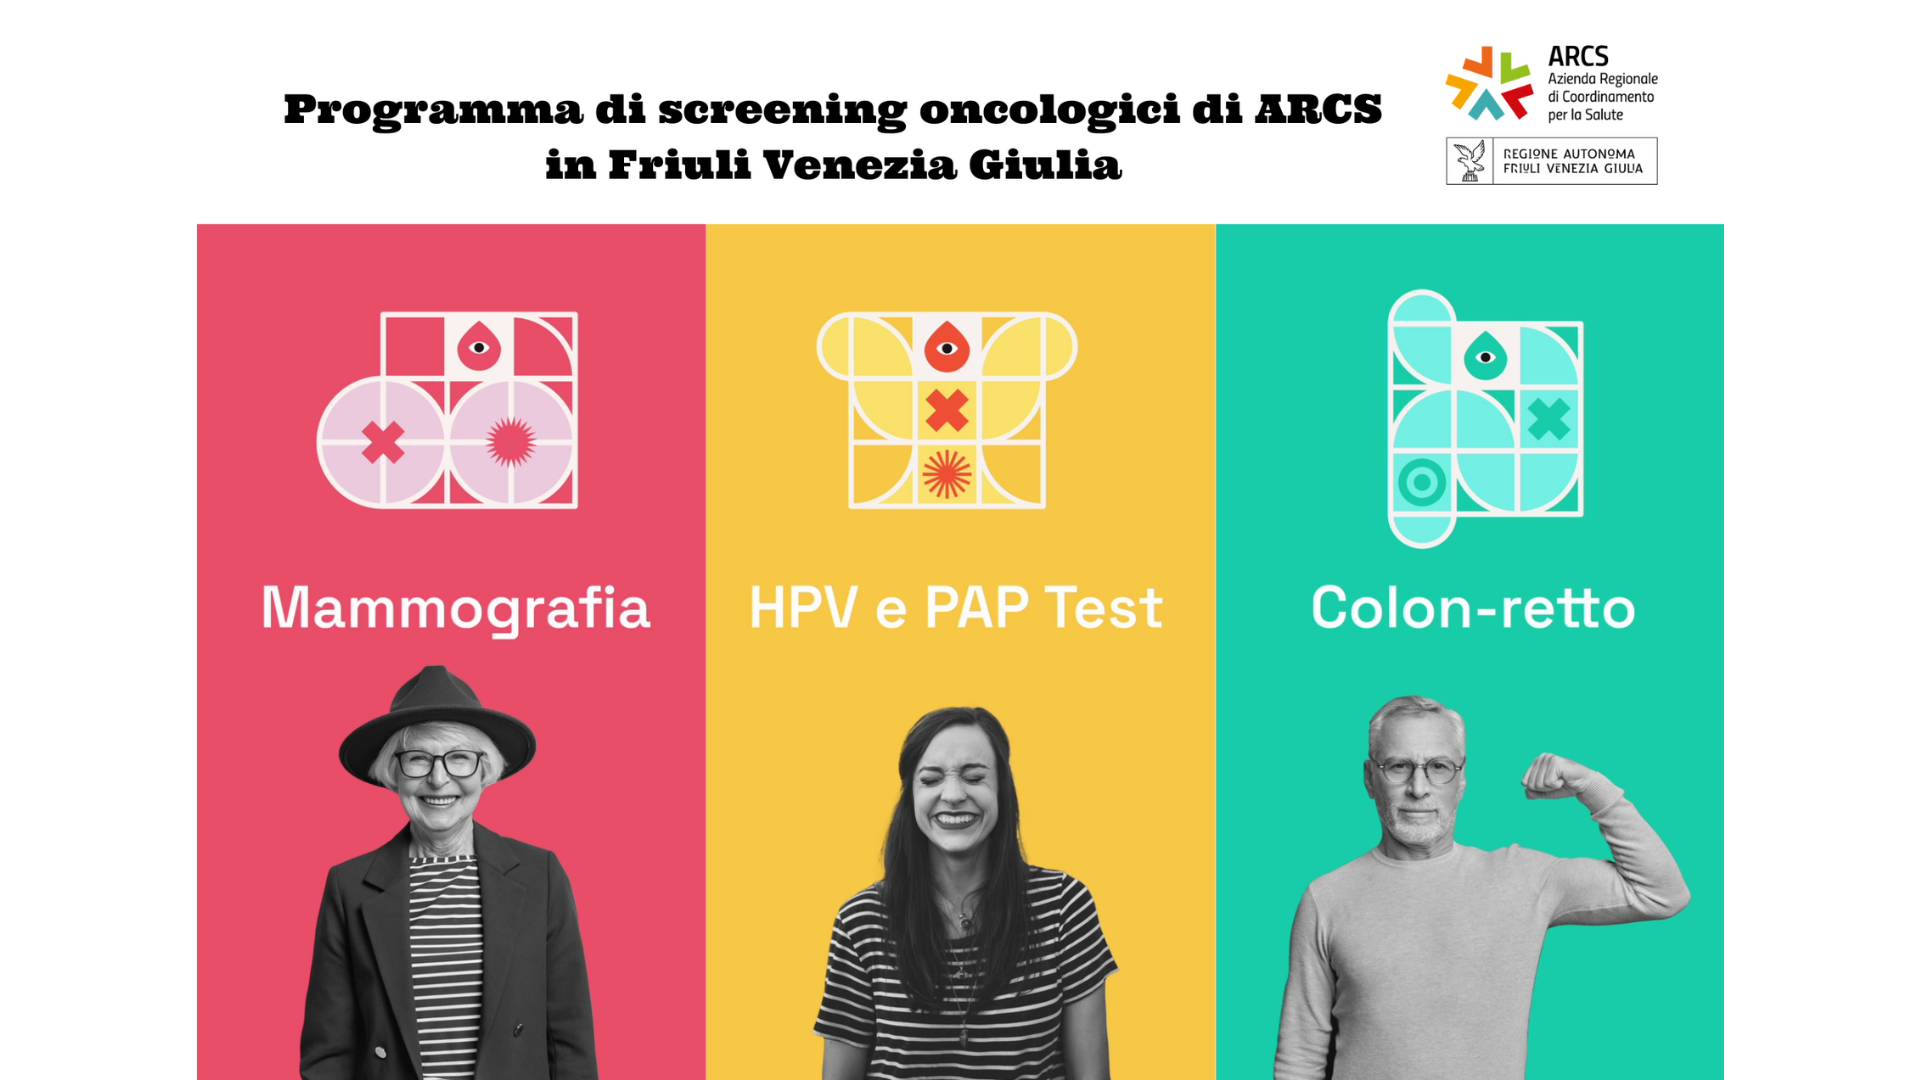 Programma di screening oncologici di ARCS in Friuli Venezia Giulia